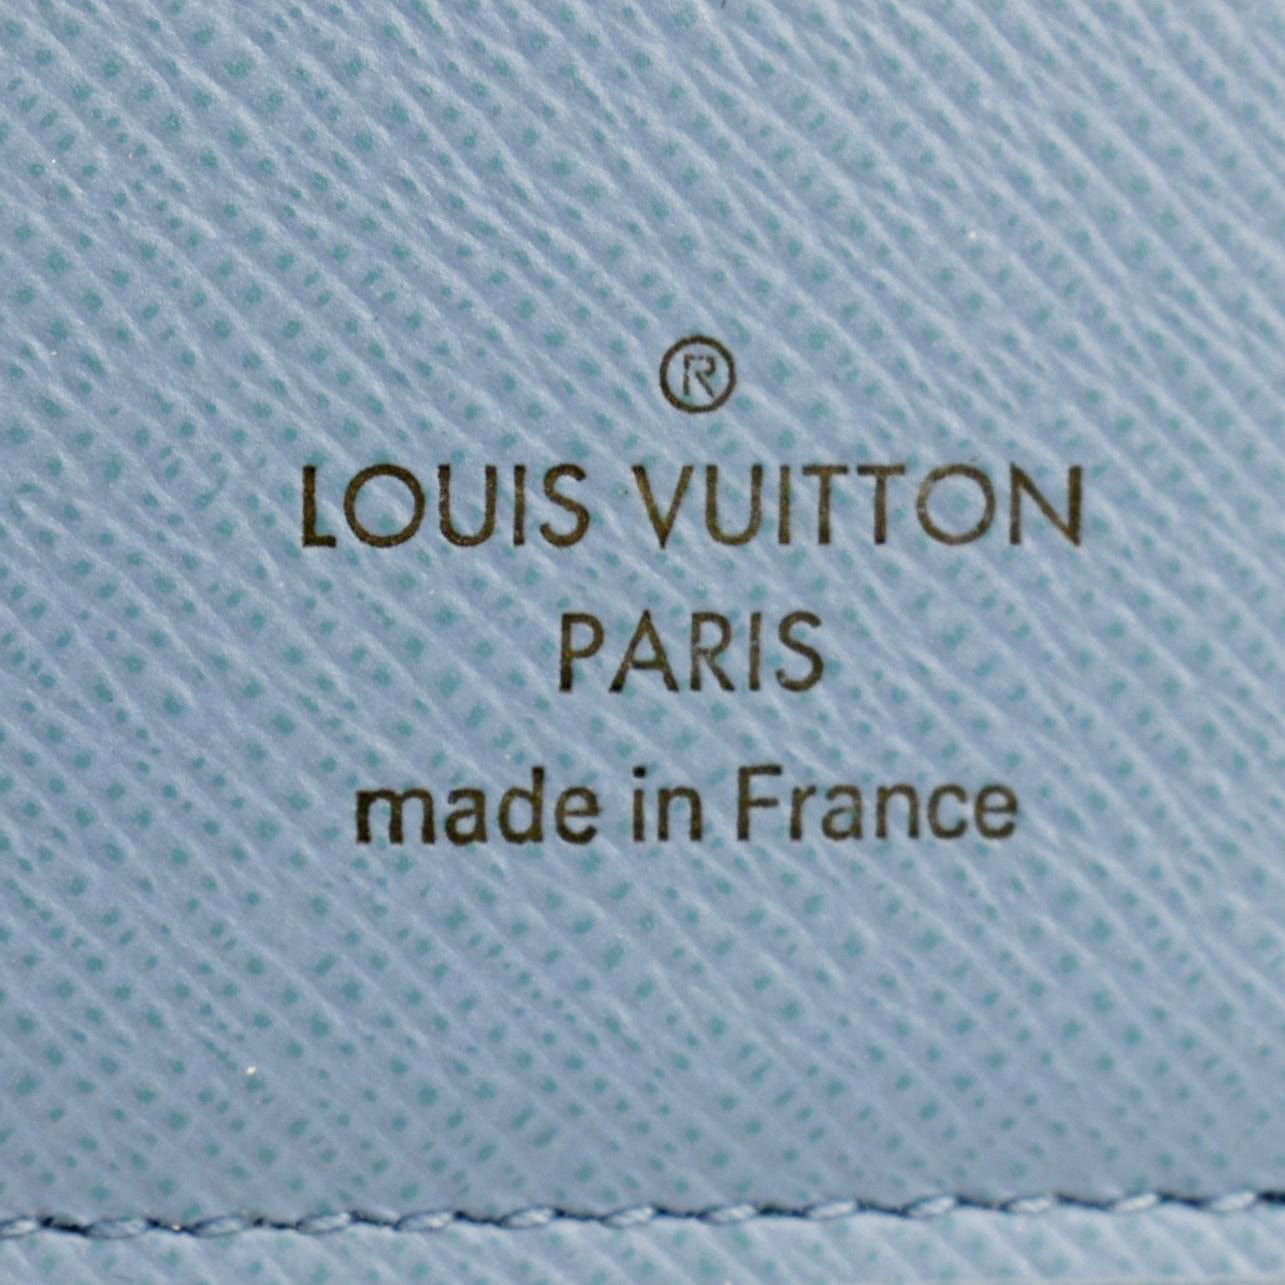 Louis Vuitton ZO√â Wallet